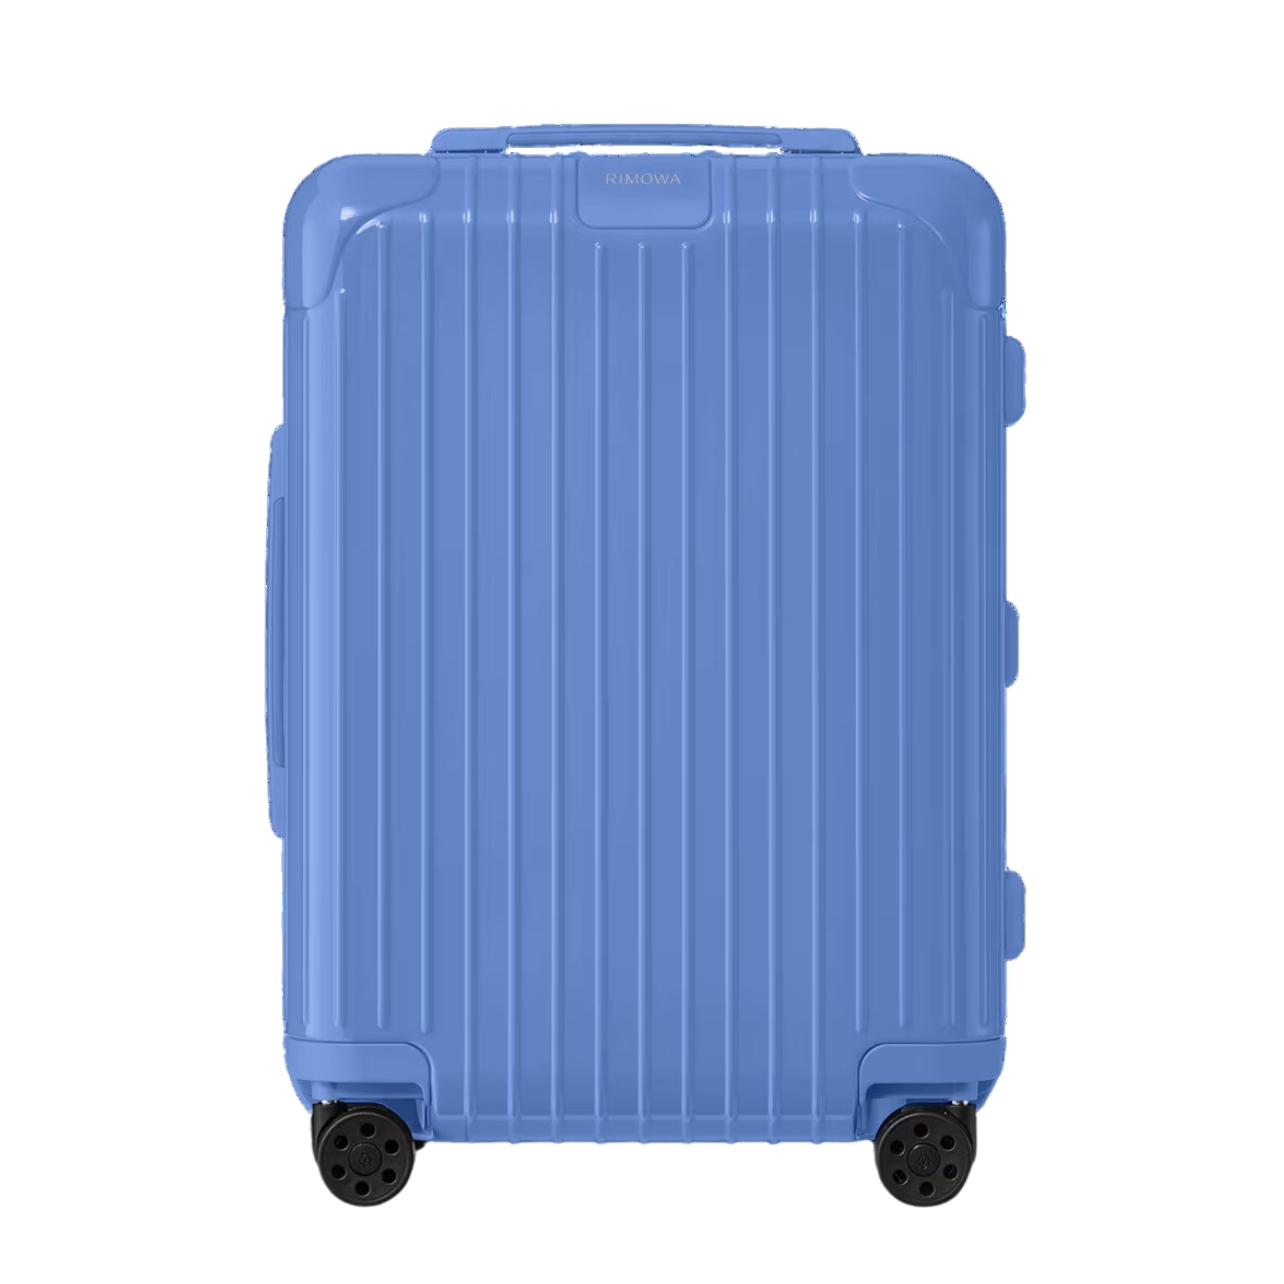 Rimowa sea blue essentials cabin luggage